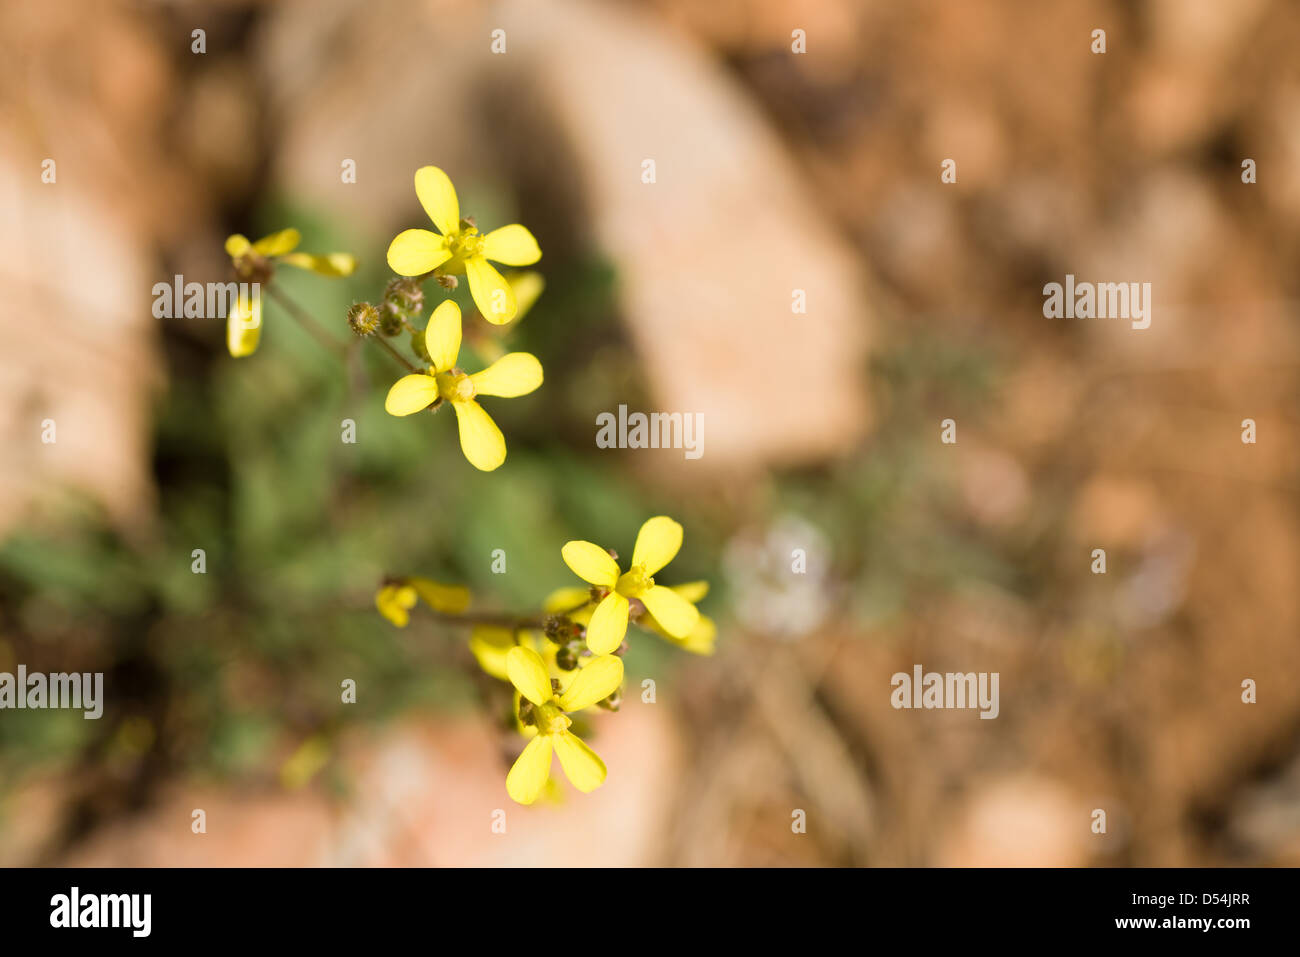 Sahara mustard weeds flowering on sandy soil Stock Photo